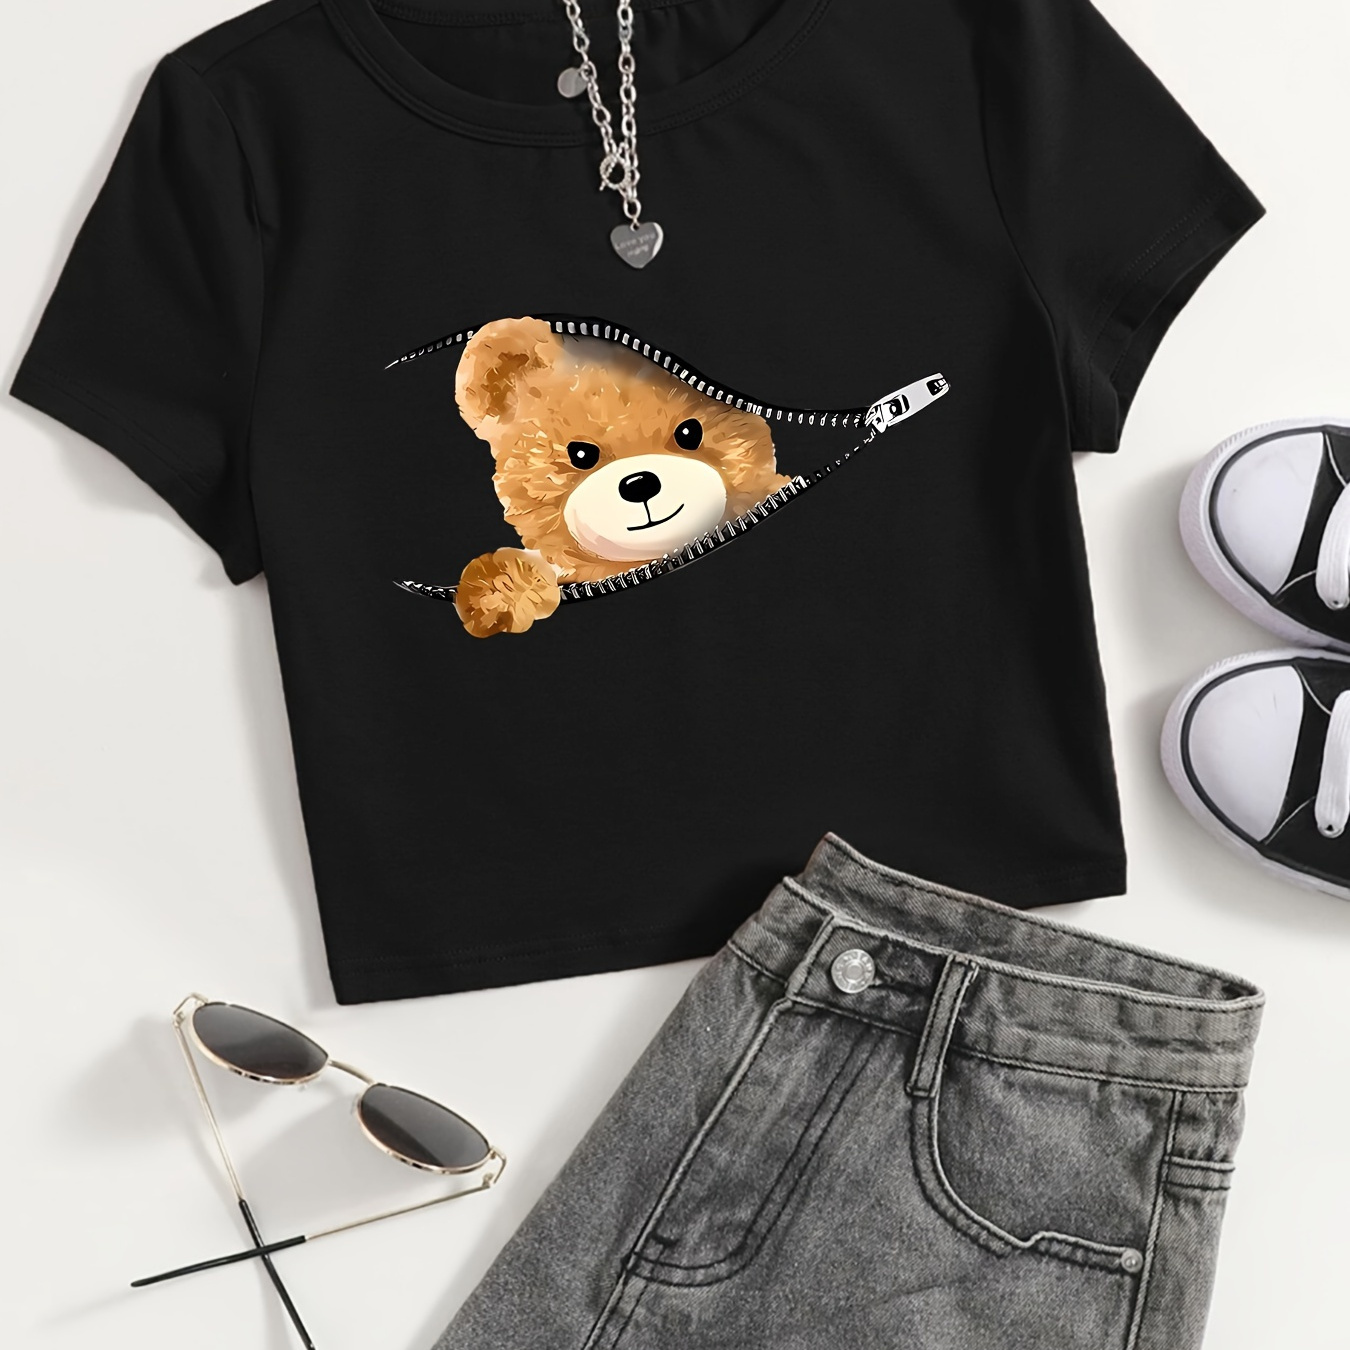 

Zipper Bear Print Crop T-shirt, Cute Crew Neck Short Sleeve Slim Top For Summer, Women's Clothing